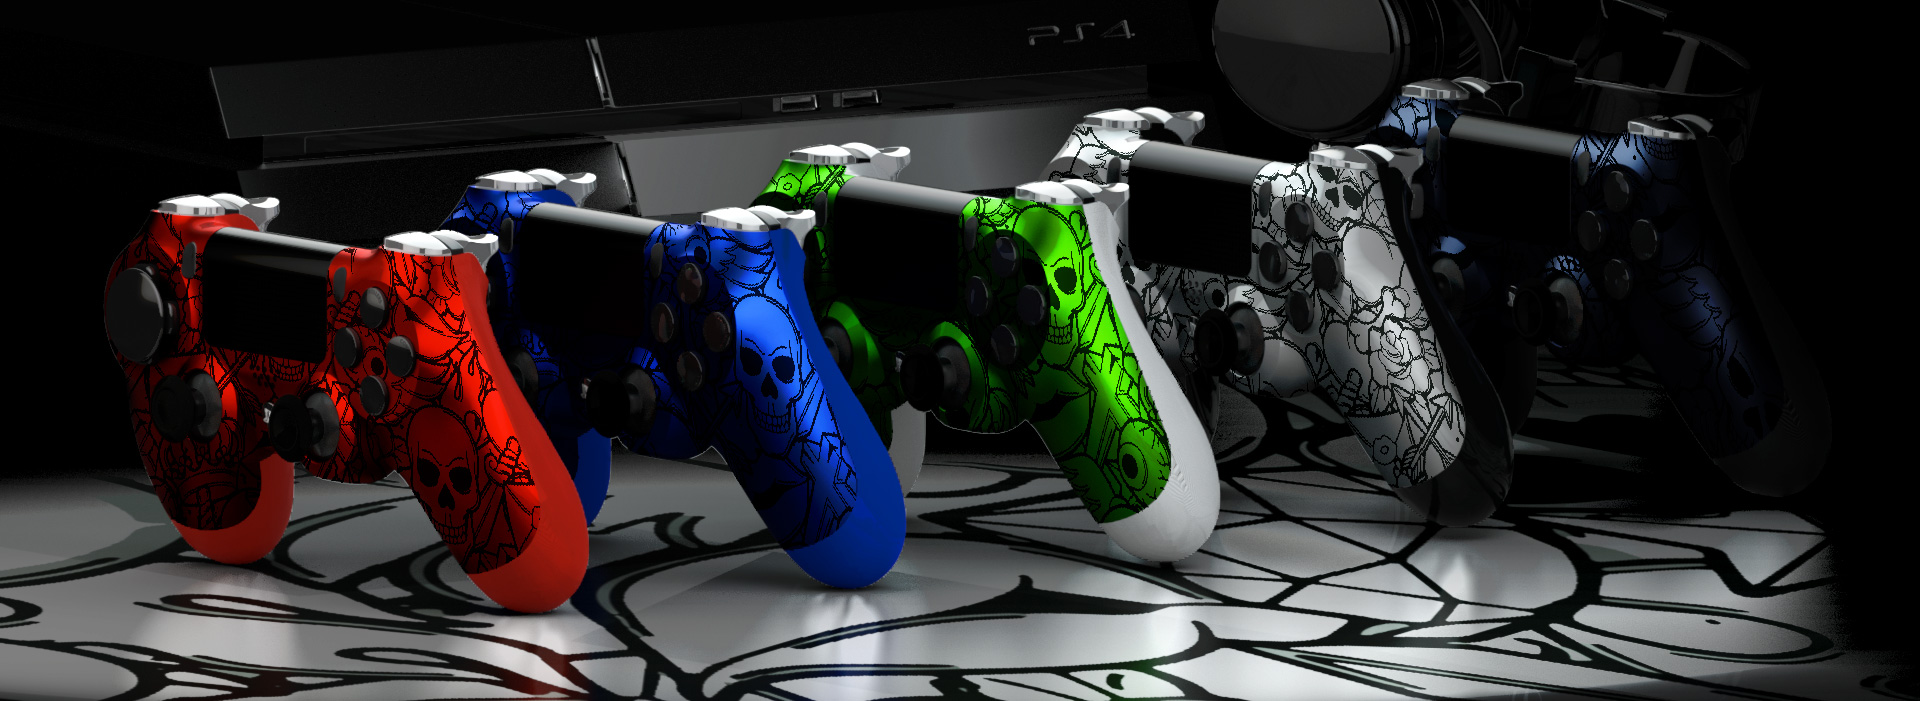 Manette PS4 personnalisée à palettes Xbox One - Blast Controllers